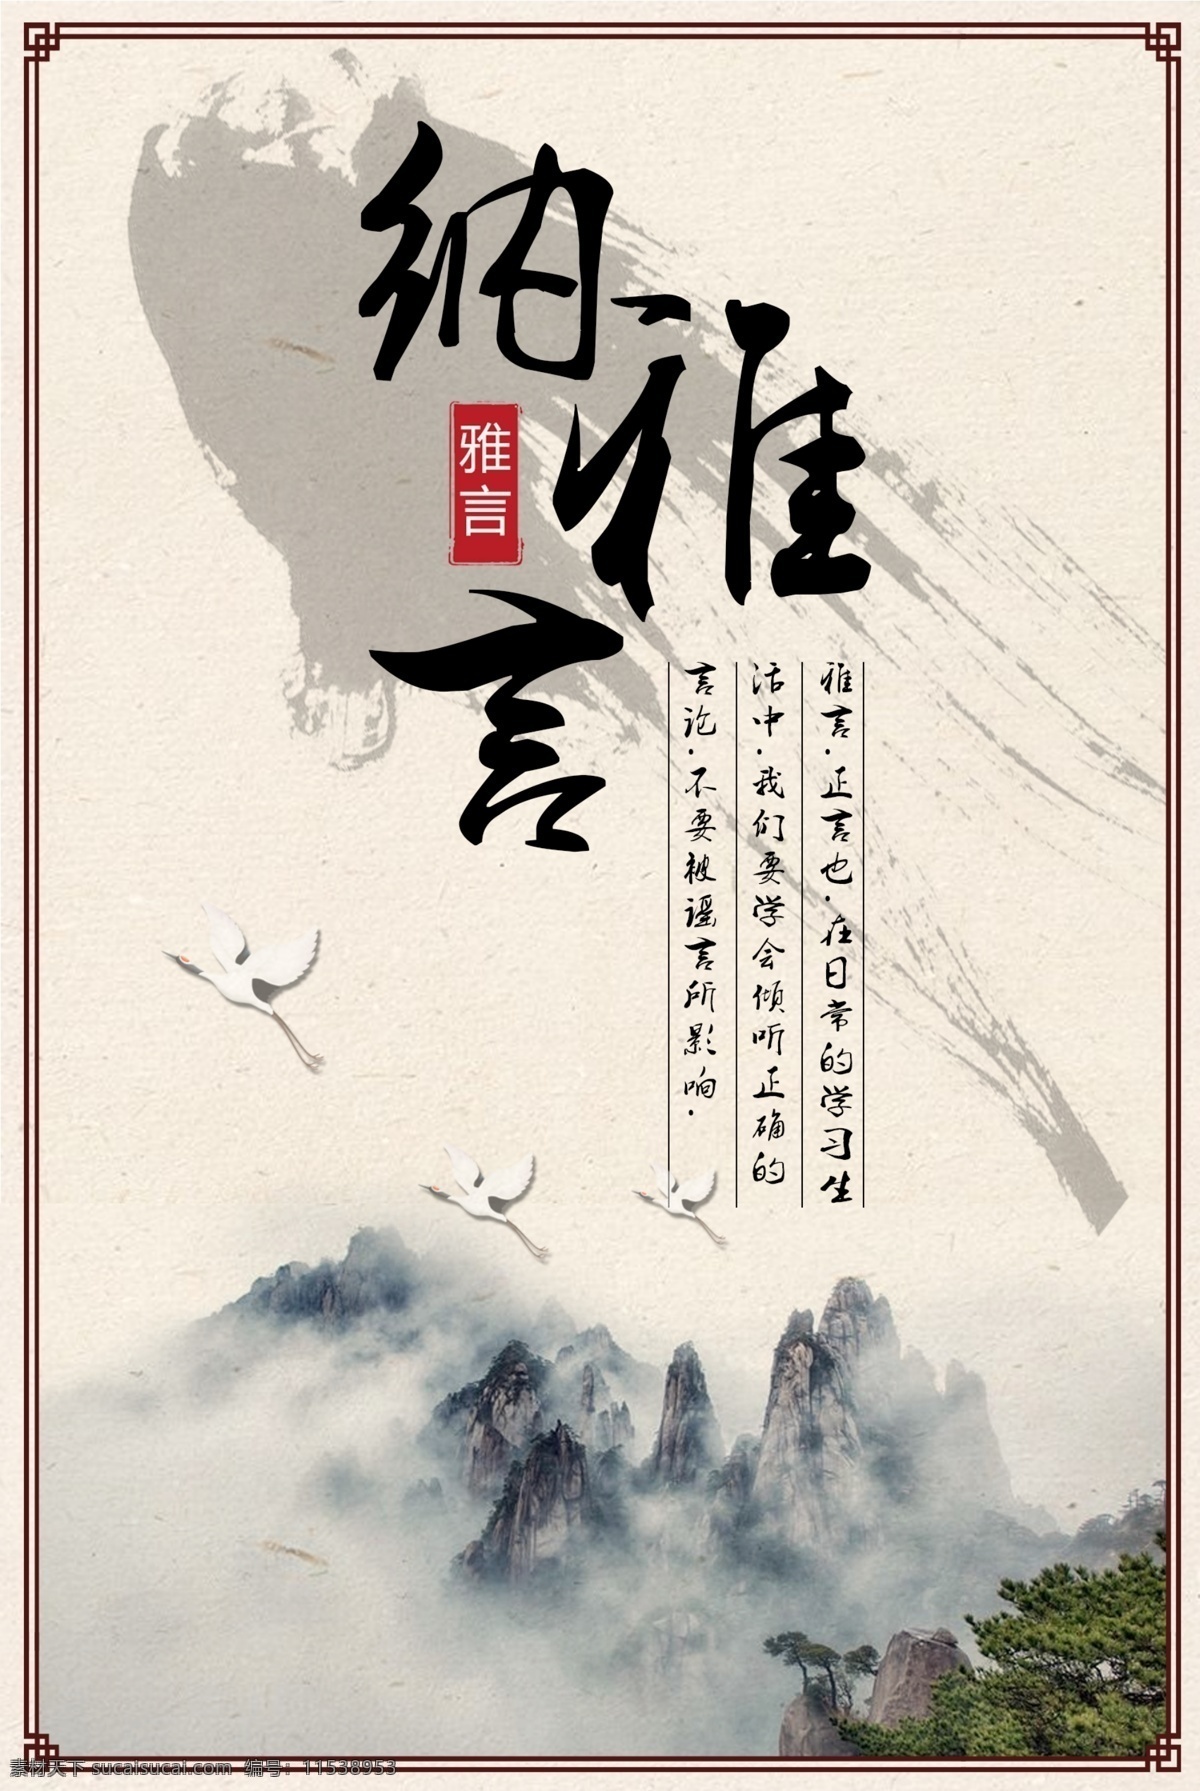 中国 风 校园文化 宣传 展板 中国风 文化 校园 海报 水墨